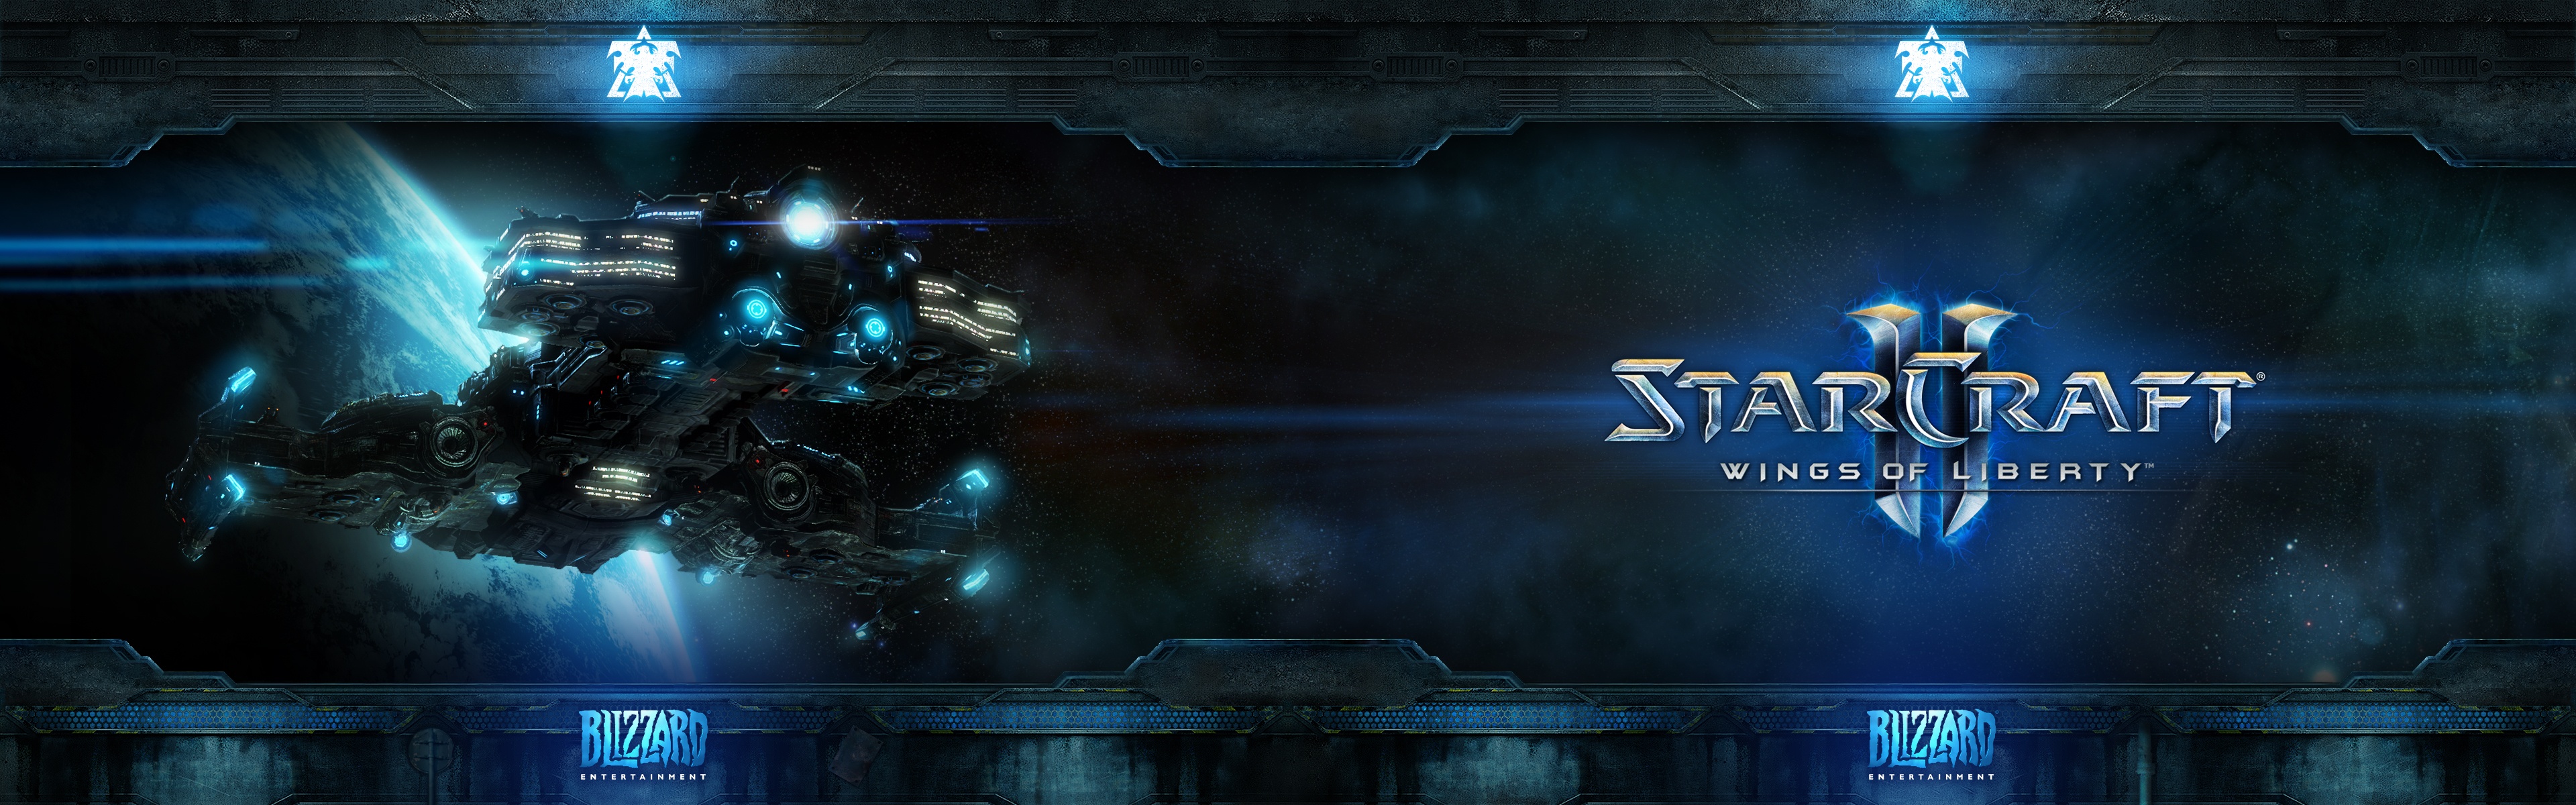 Starcraft 2 - HD Wallpaper 